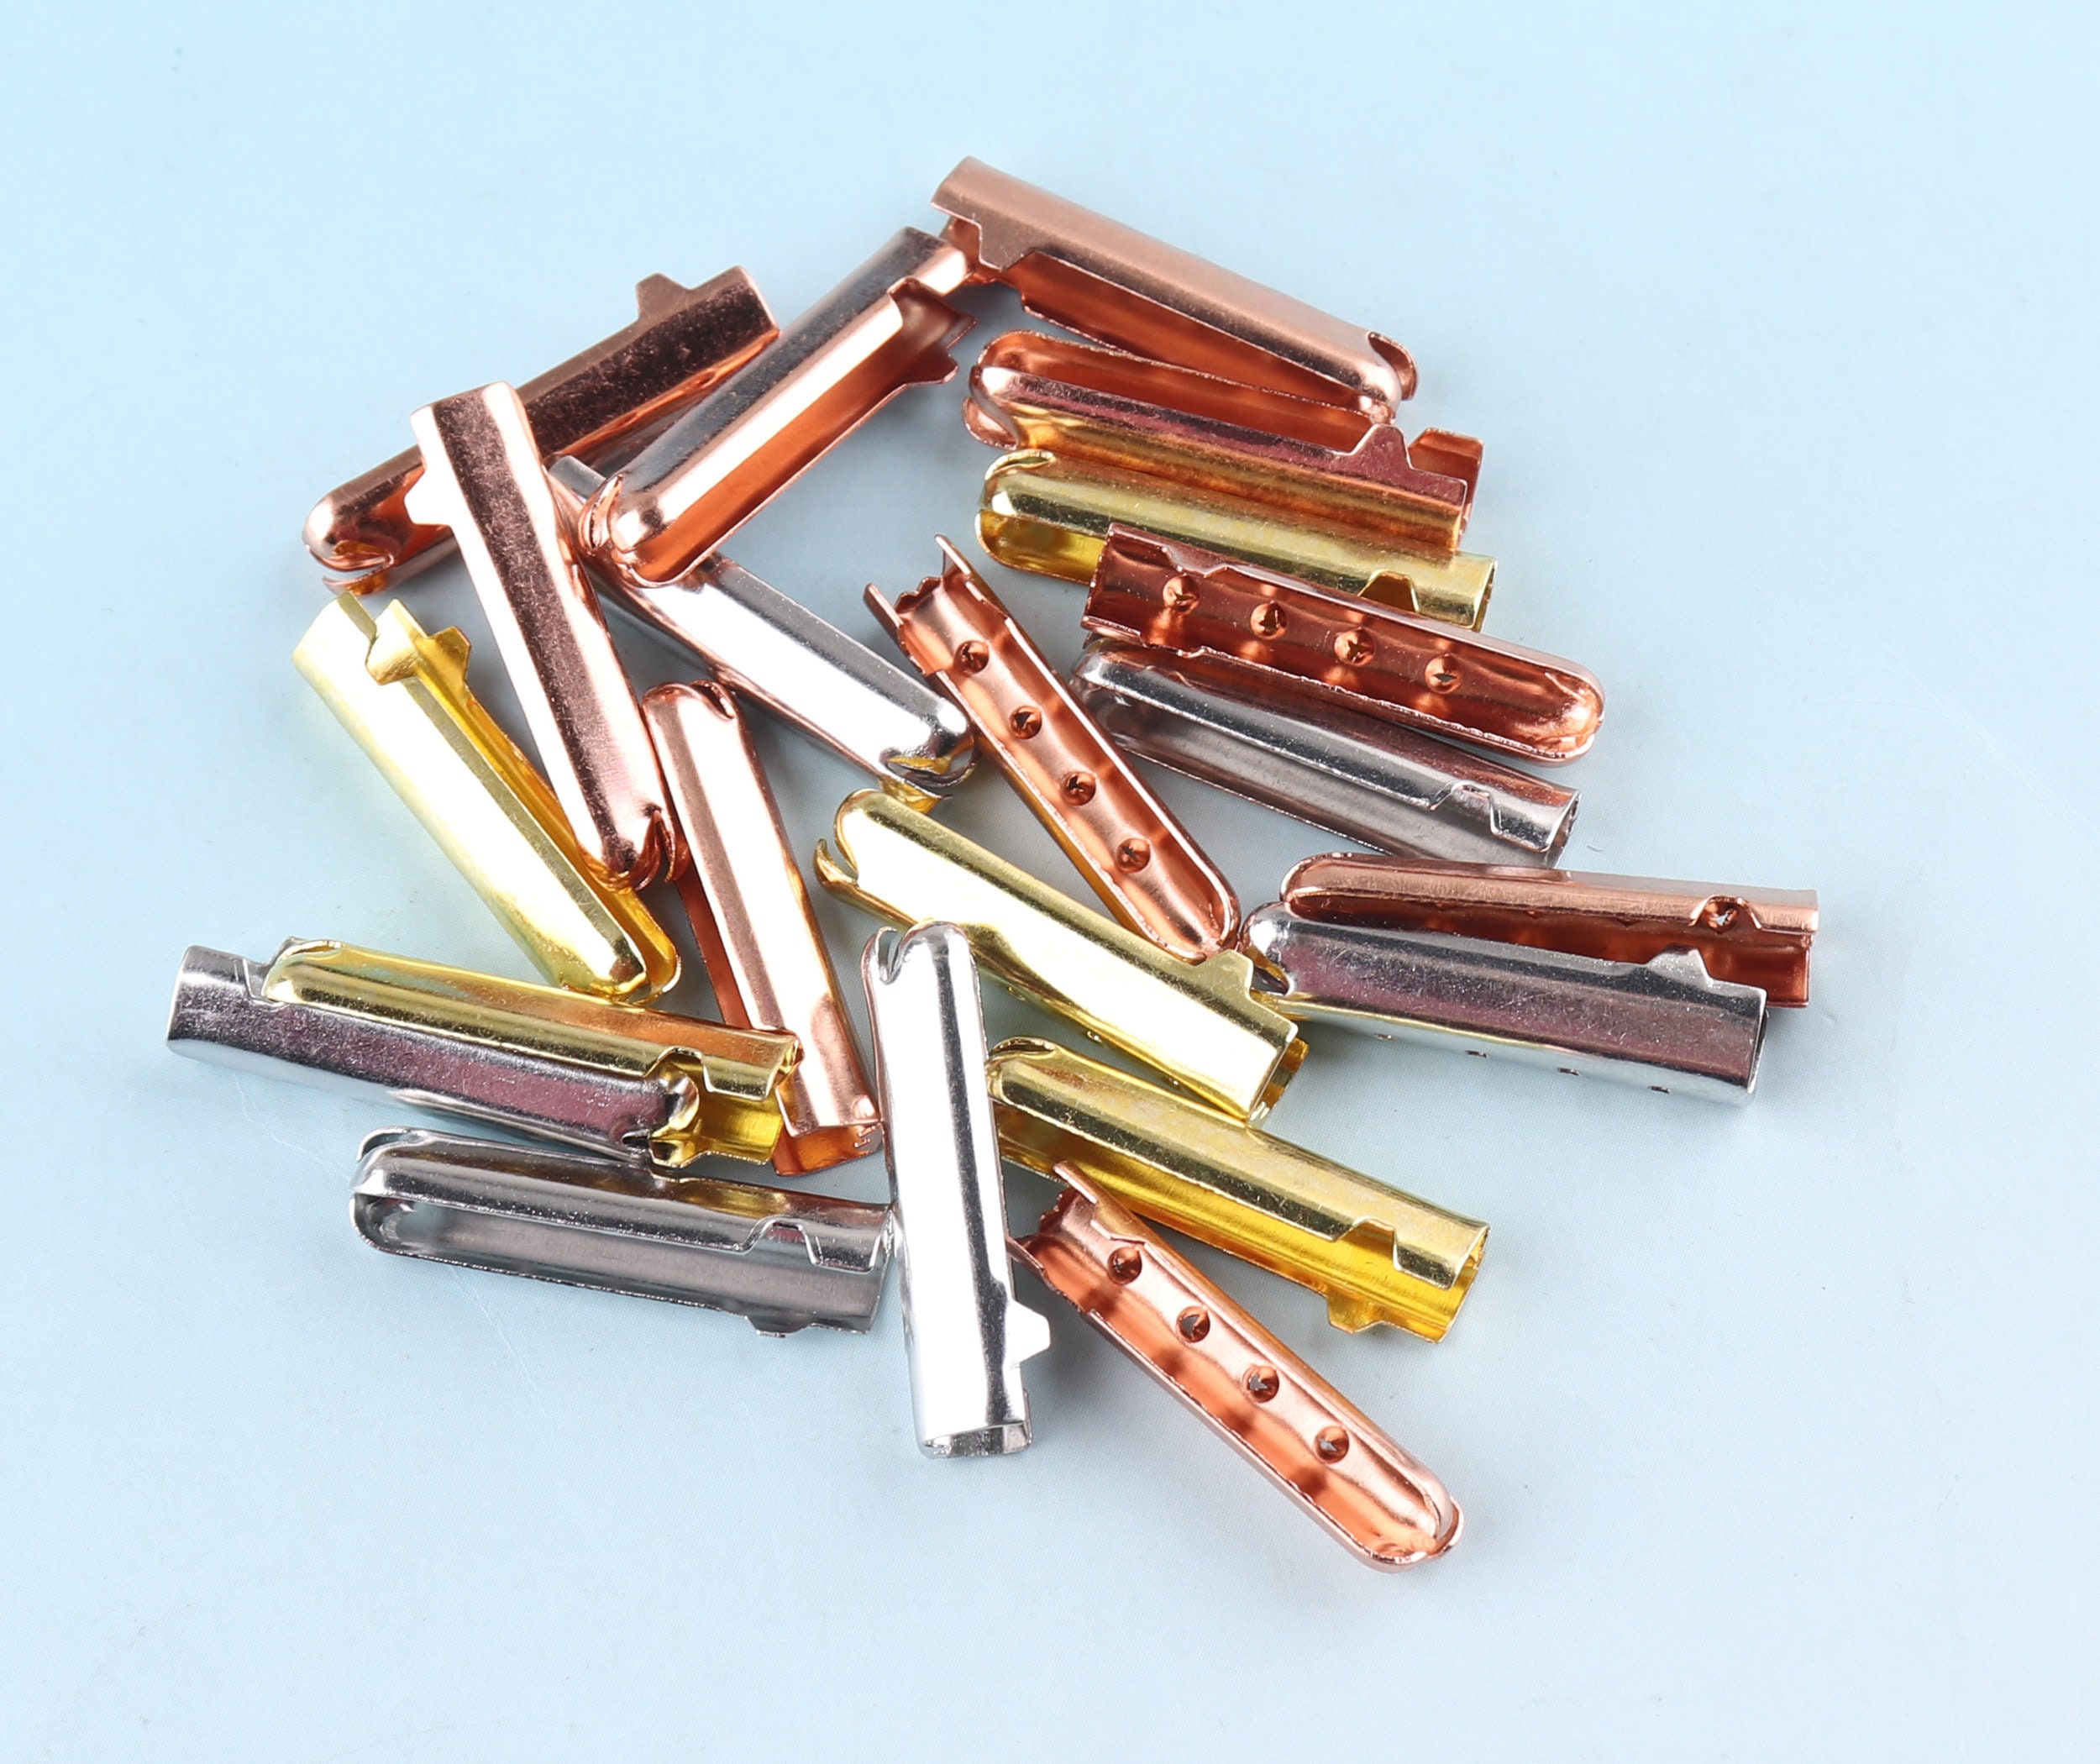 20/100pcs 5mm Rose Gold Shoelace Tips Metal Aglets Shoelace Bullet